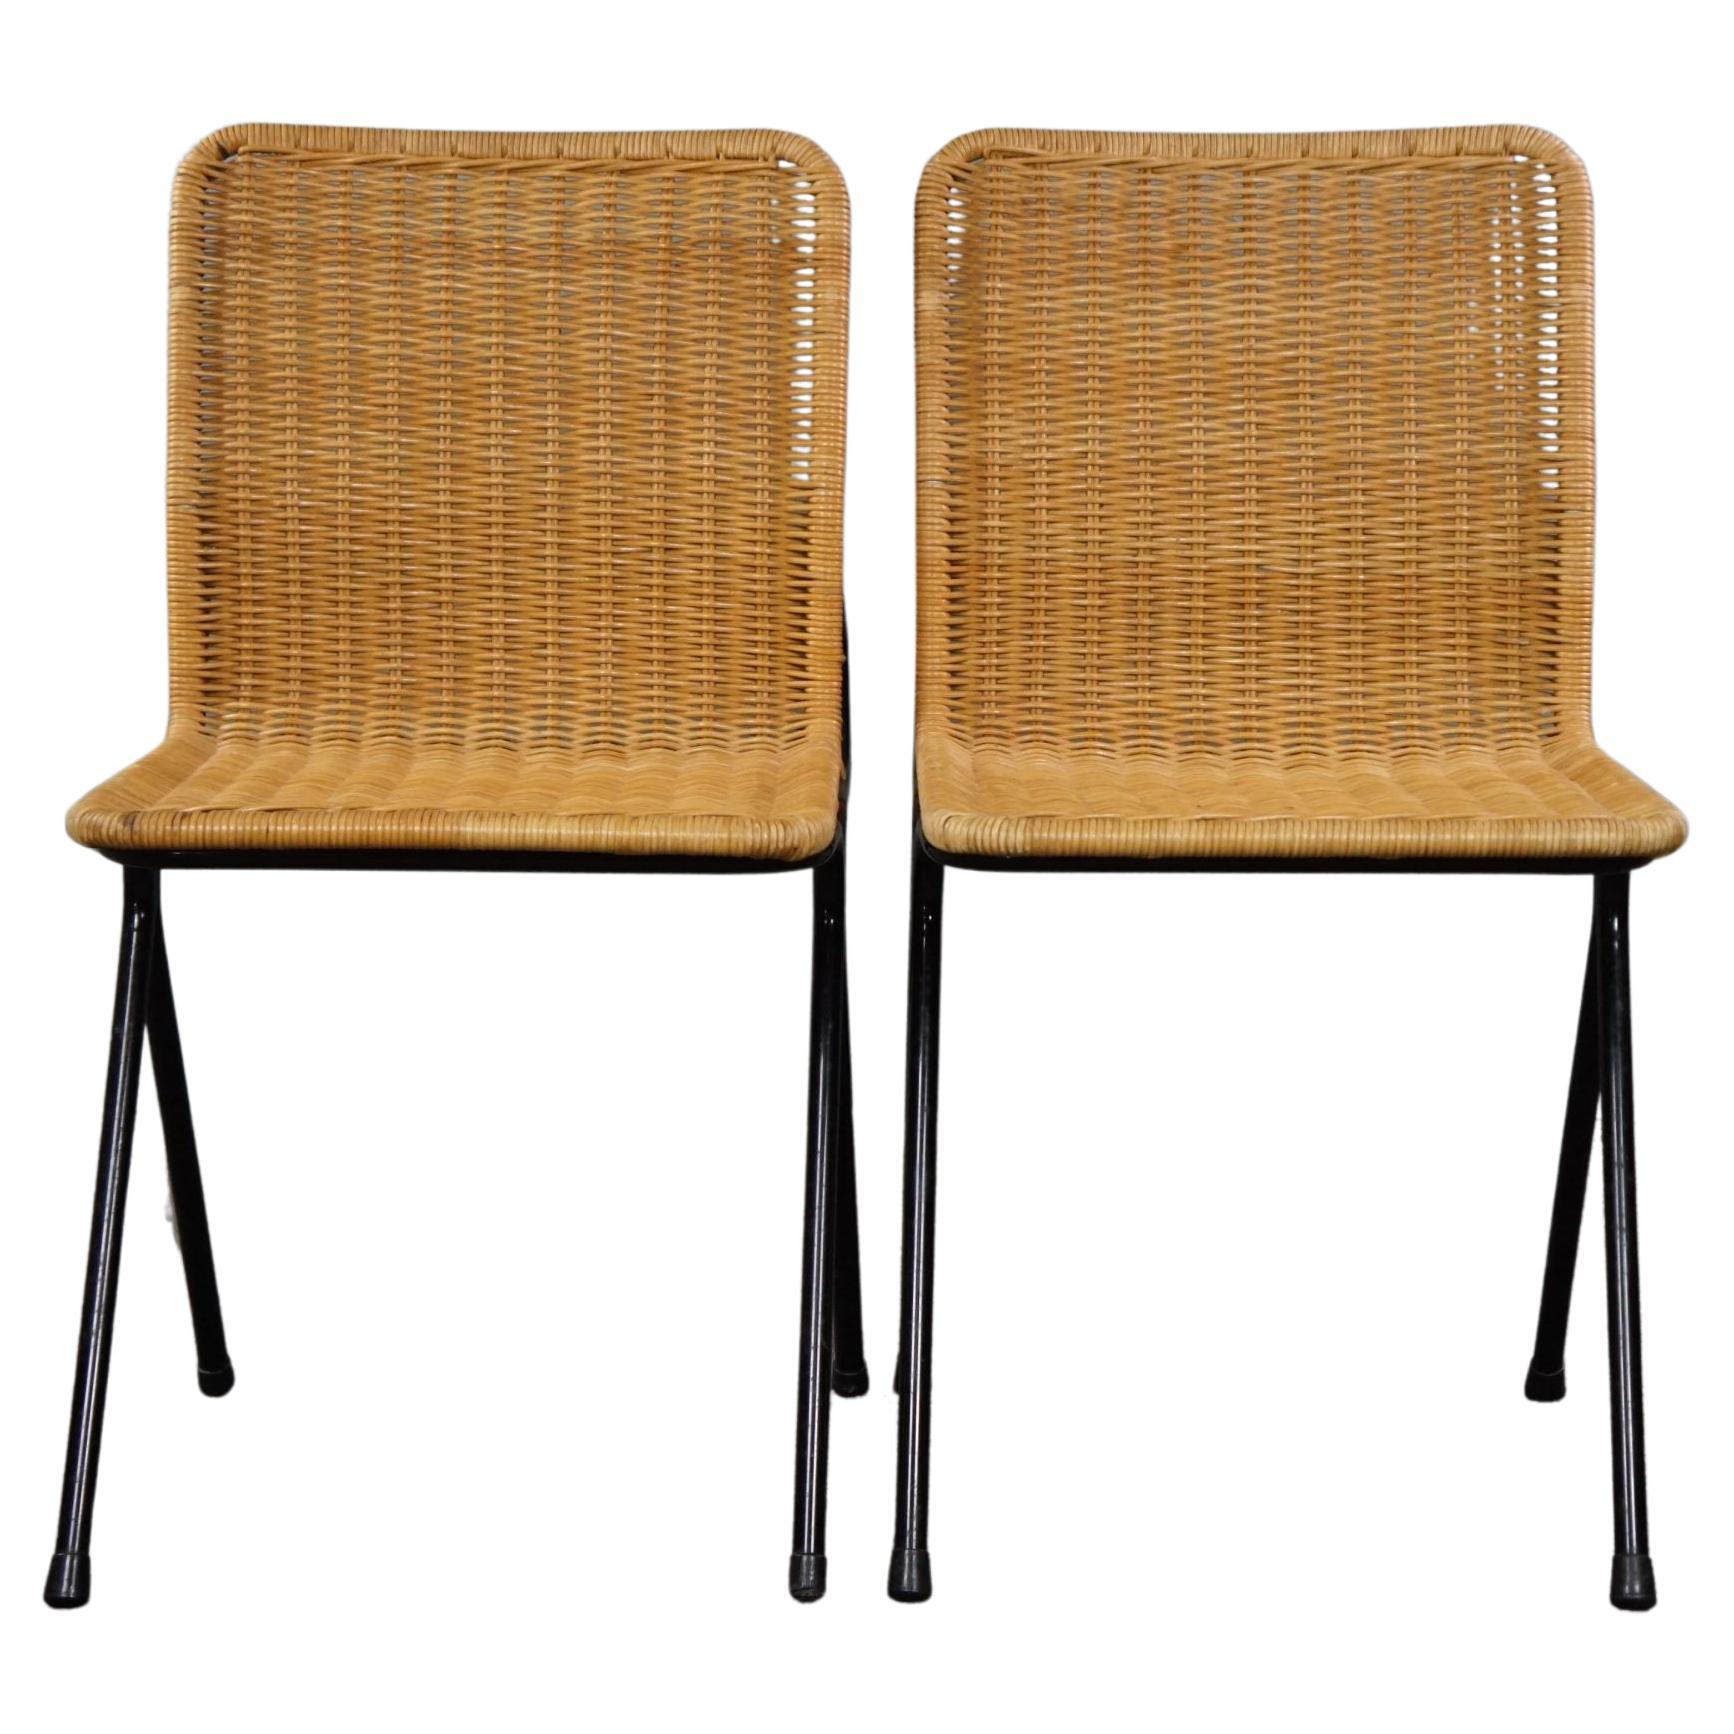 Ensemble de deux chaises vintage en rotin, Dirk van Sliedrecht, années 1960